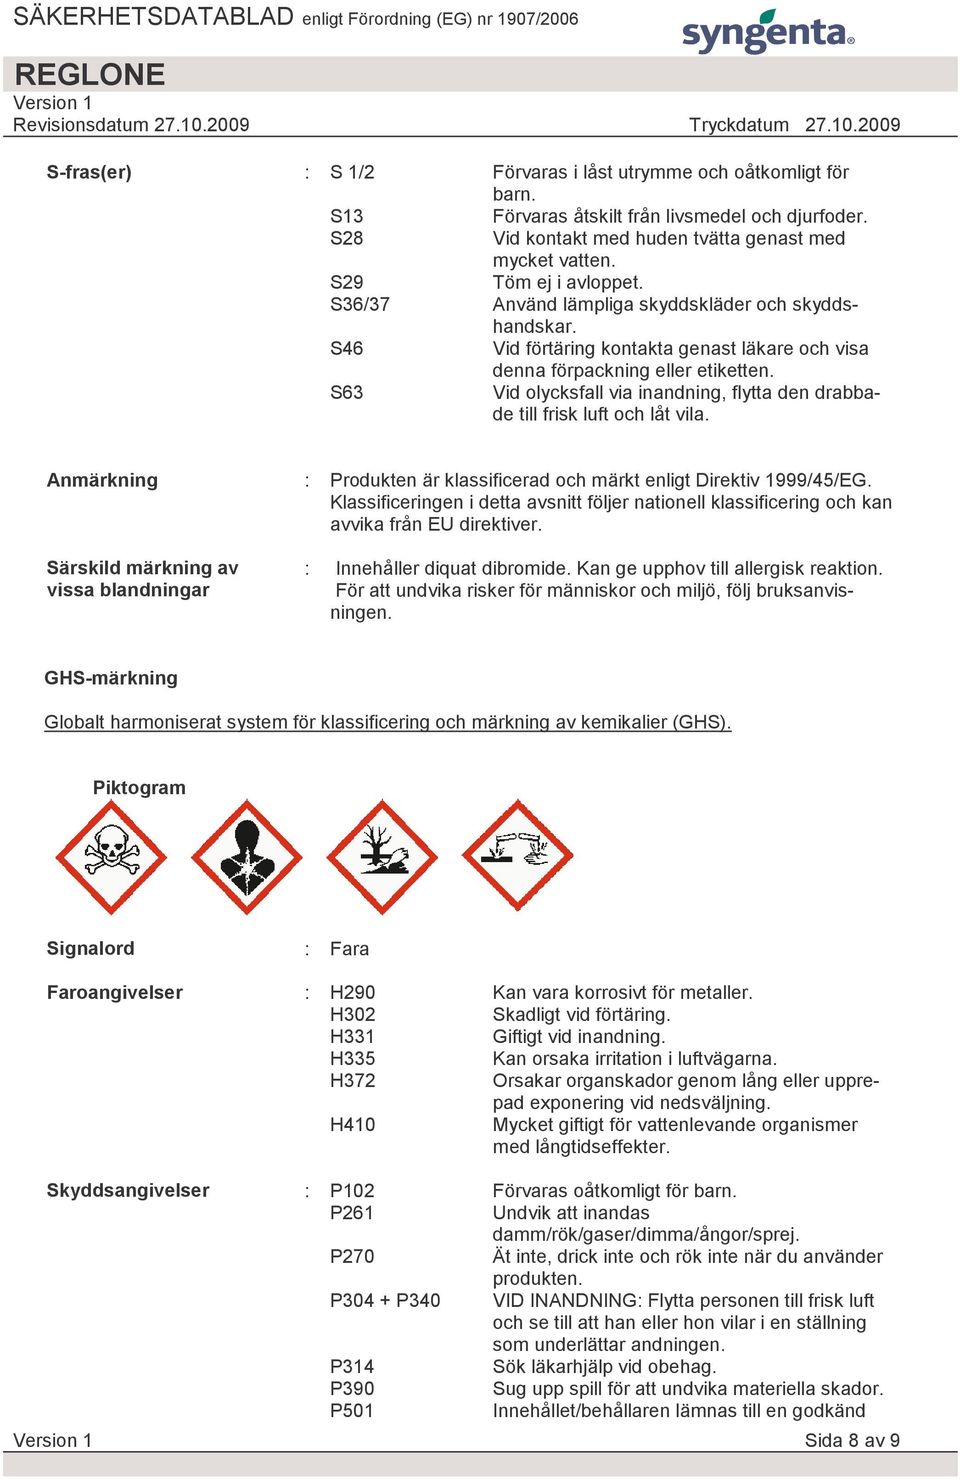 S63 Vid olycksfall via inandning, flytta den drabbade till frisk luft och låt vila. Anmärkning Särskild märkning av vissa blandningar : Produkten är klassificerad och märkt enligt Direktiv 1999/45/EG.